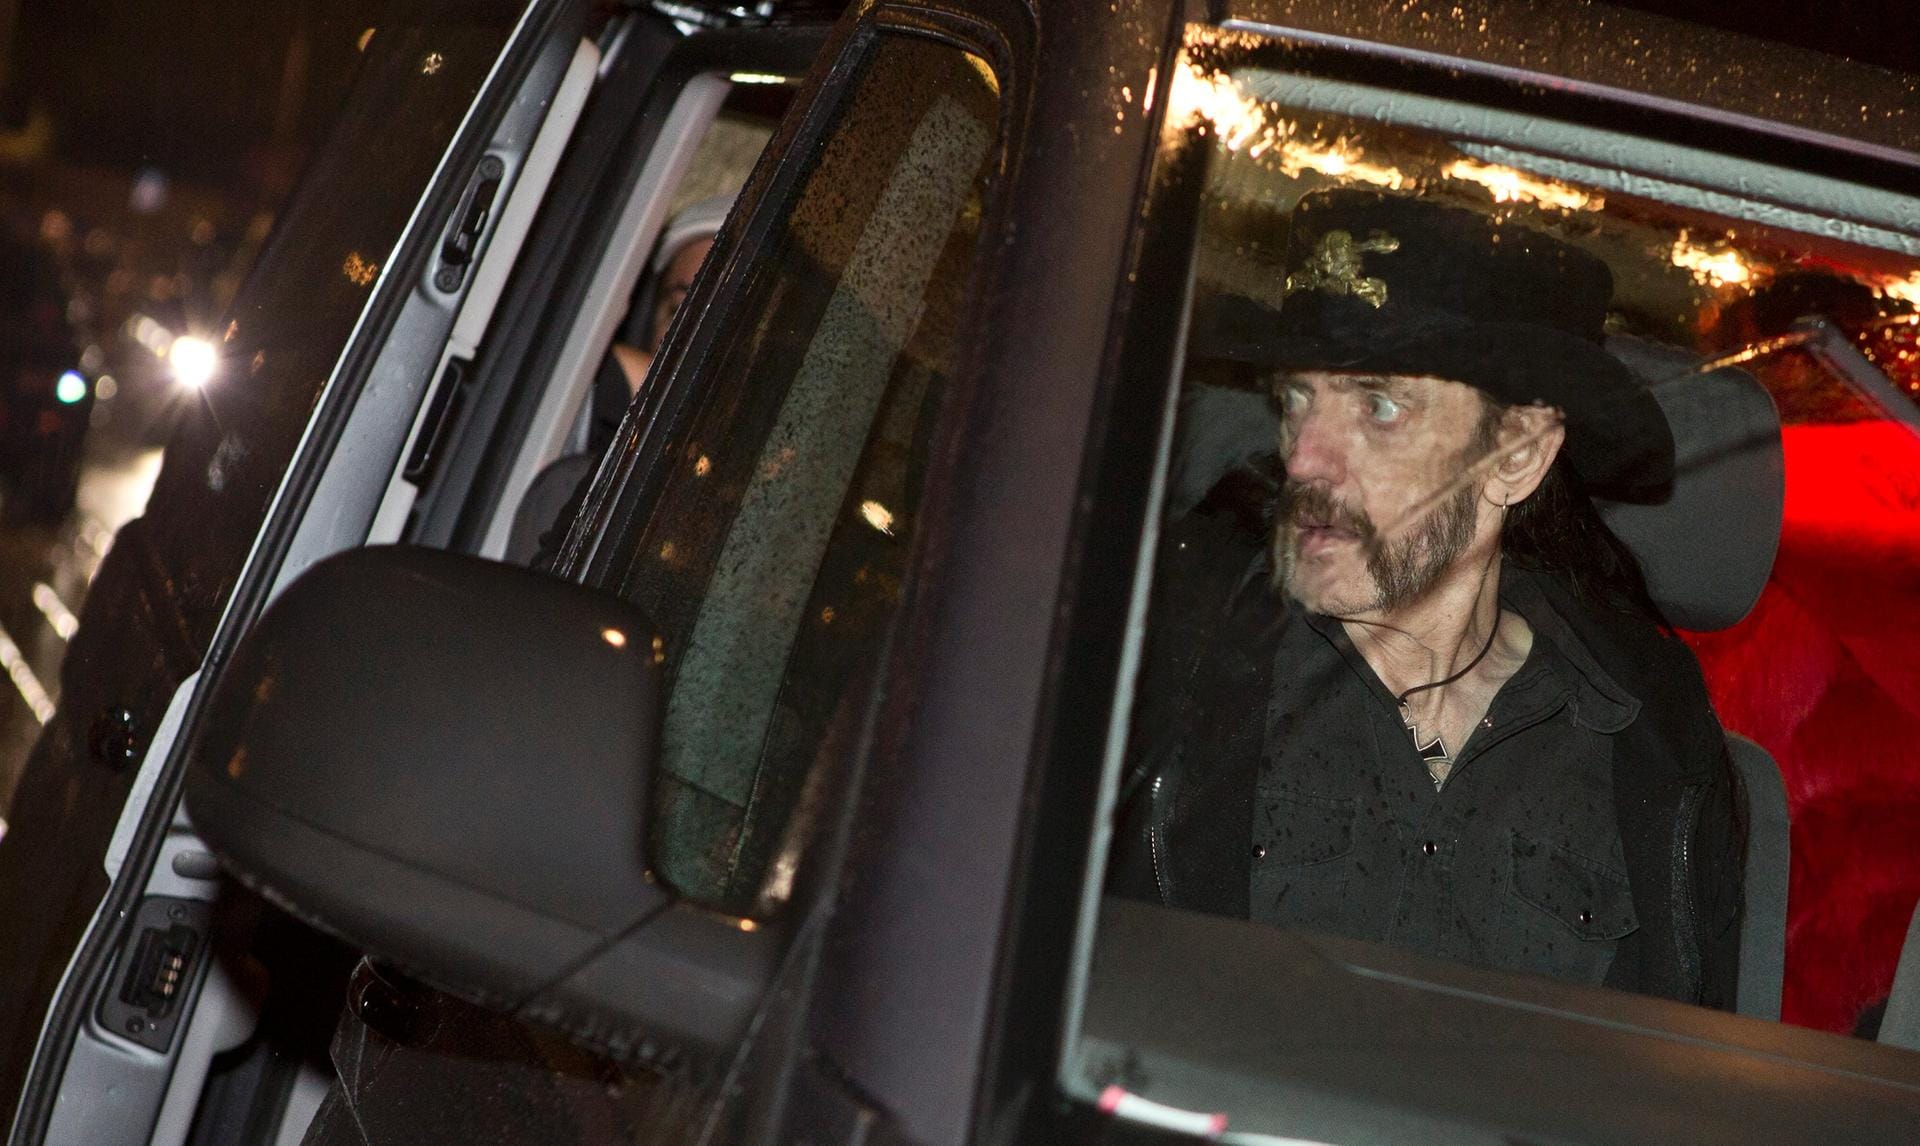 Eine der letzten Aufnahmen des Motörhead-Sängers: Lemmy Kilmister im Auto in Stockholm.